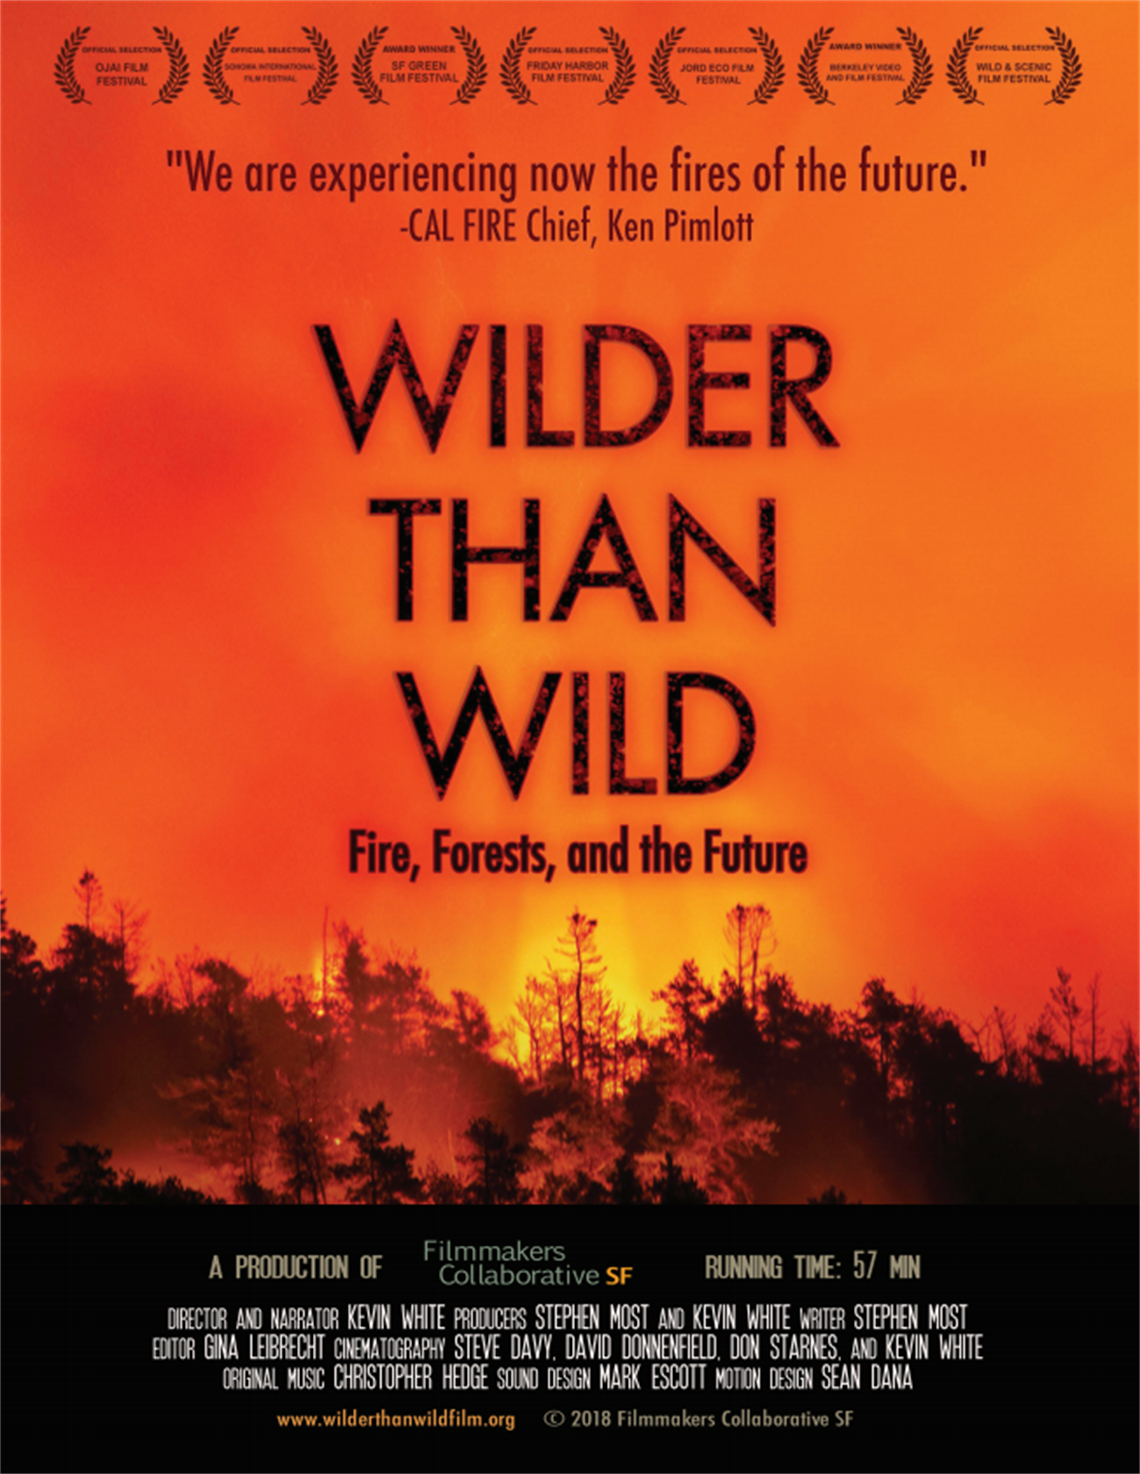 Wilder than wild Image.PNG